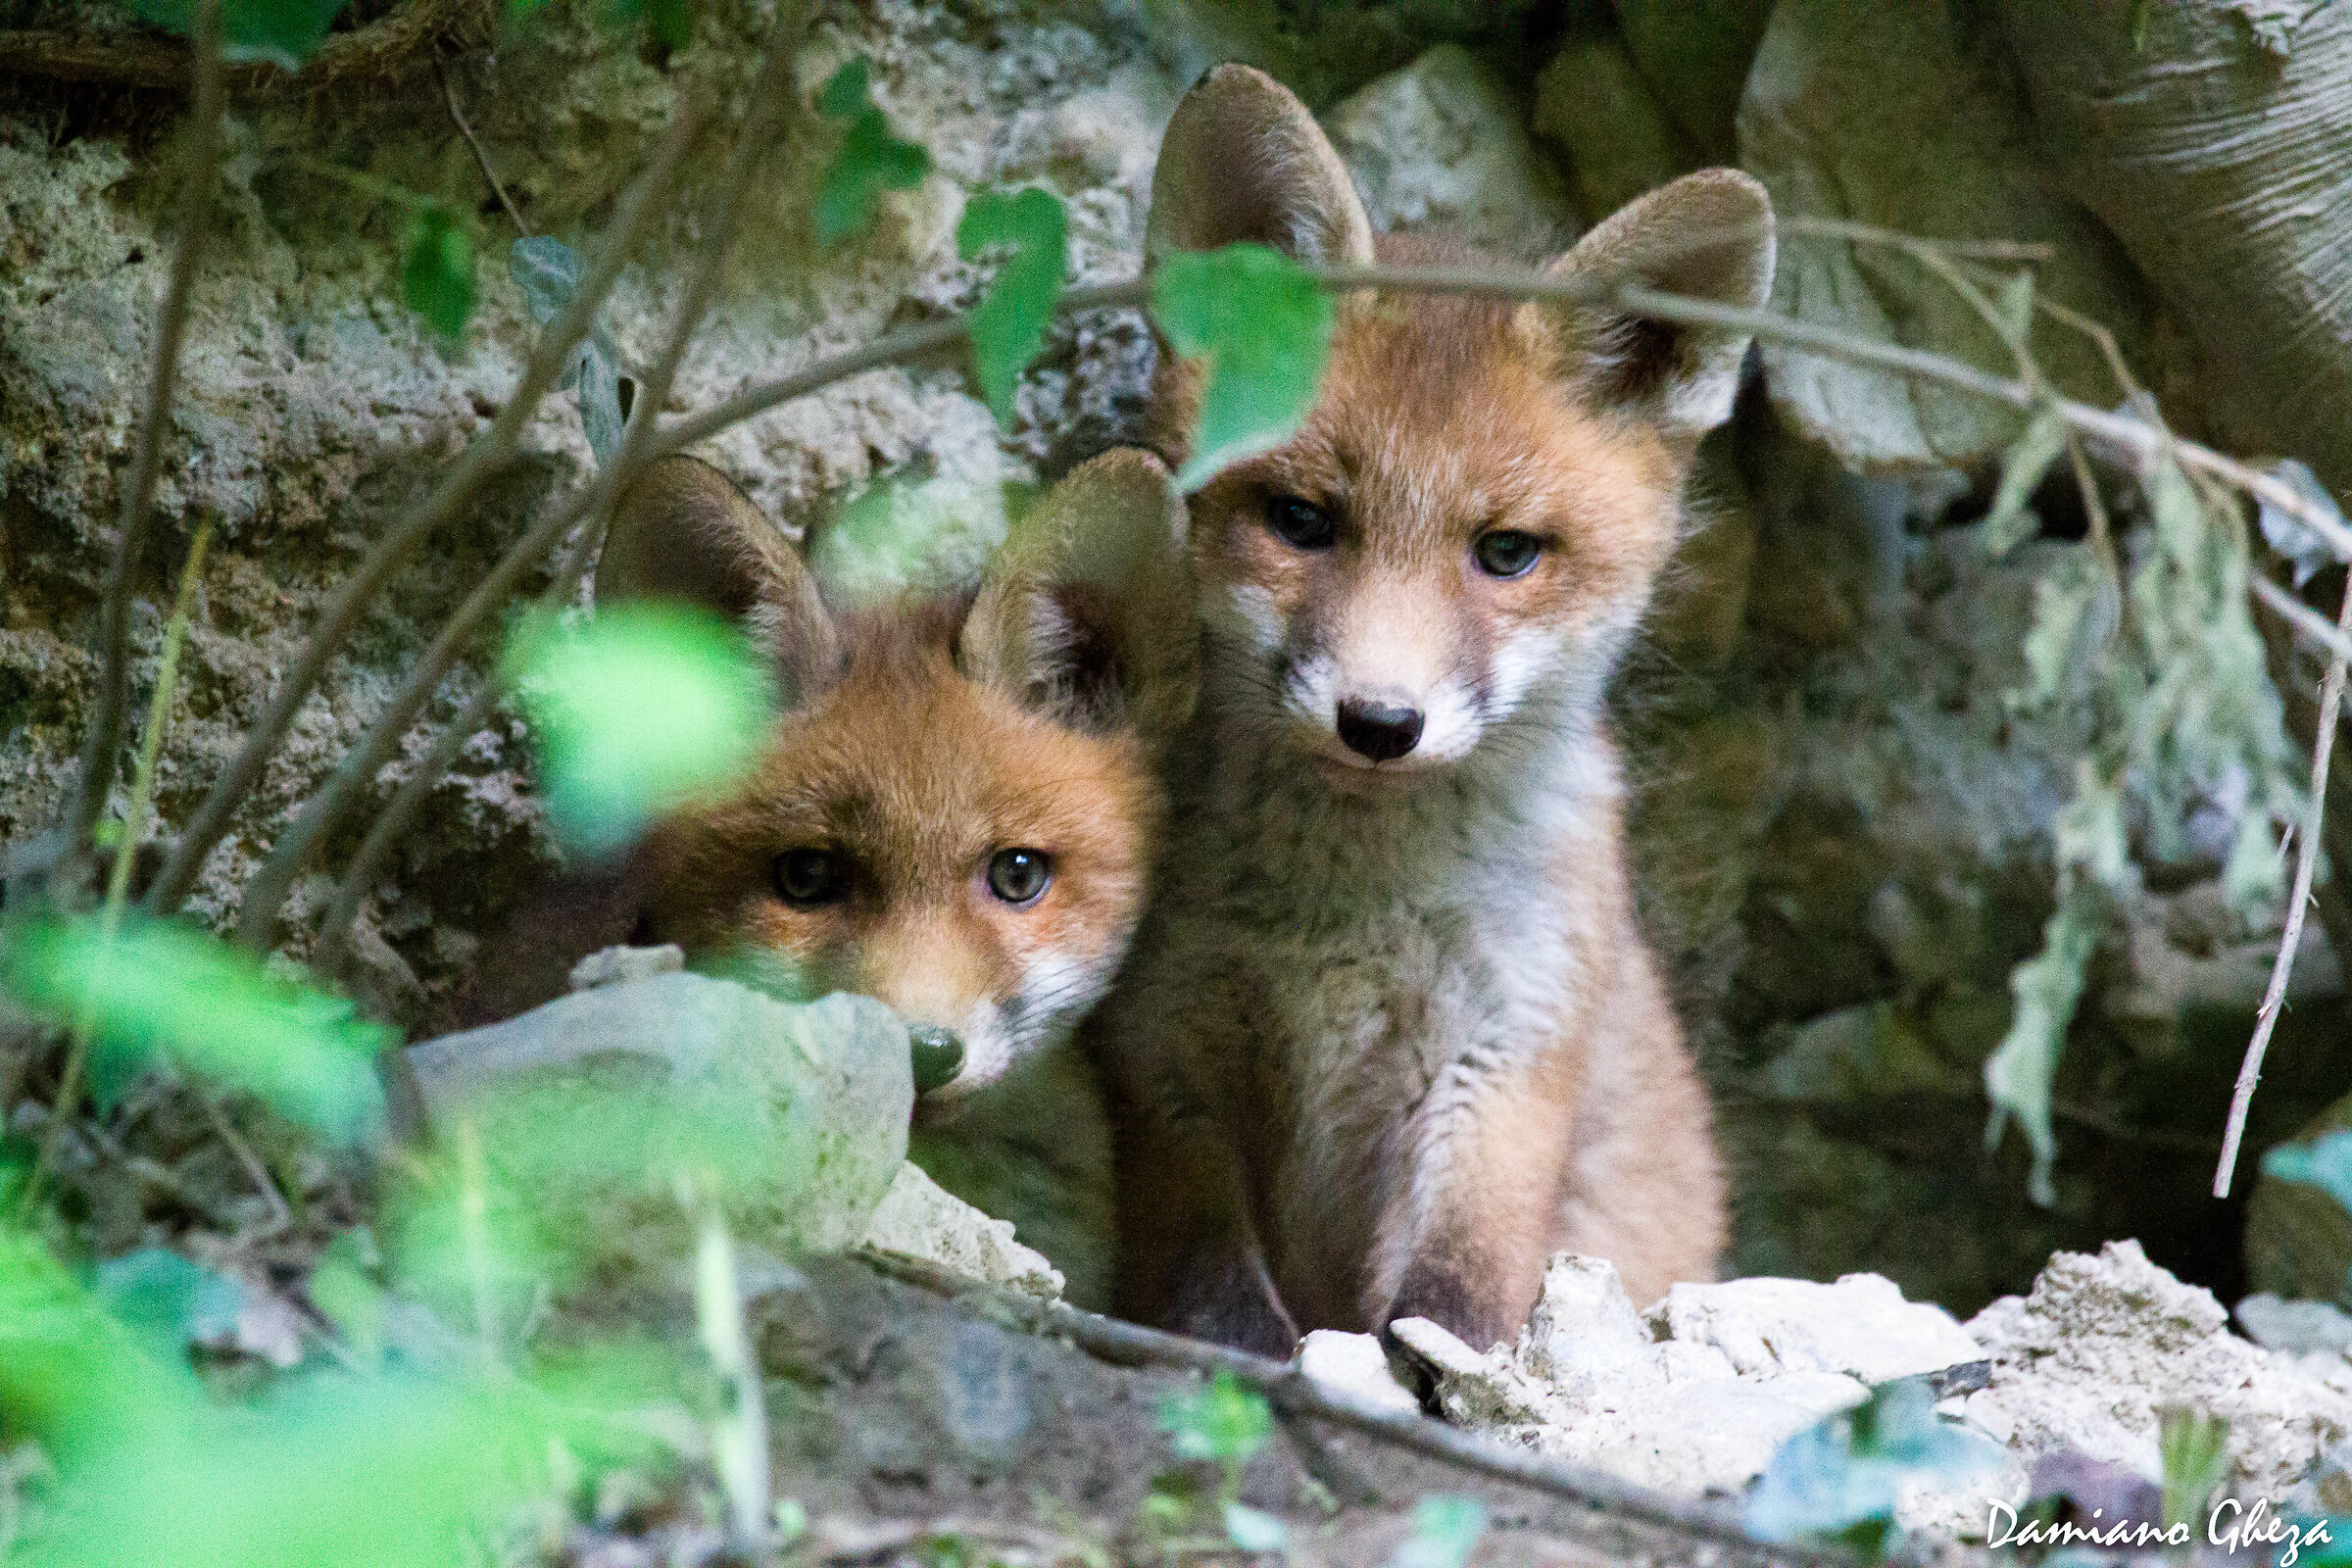 Fox babies...